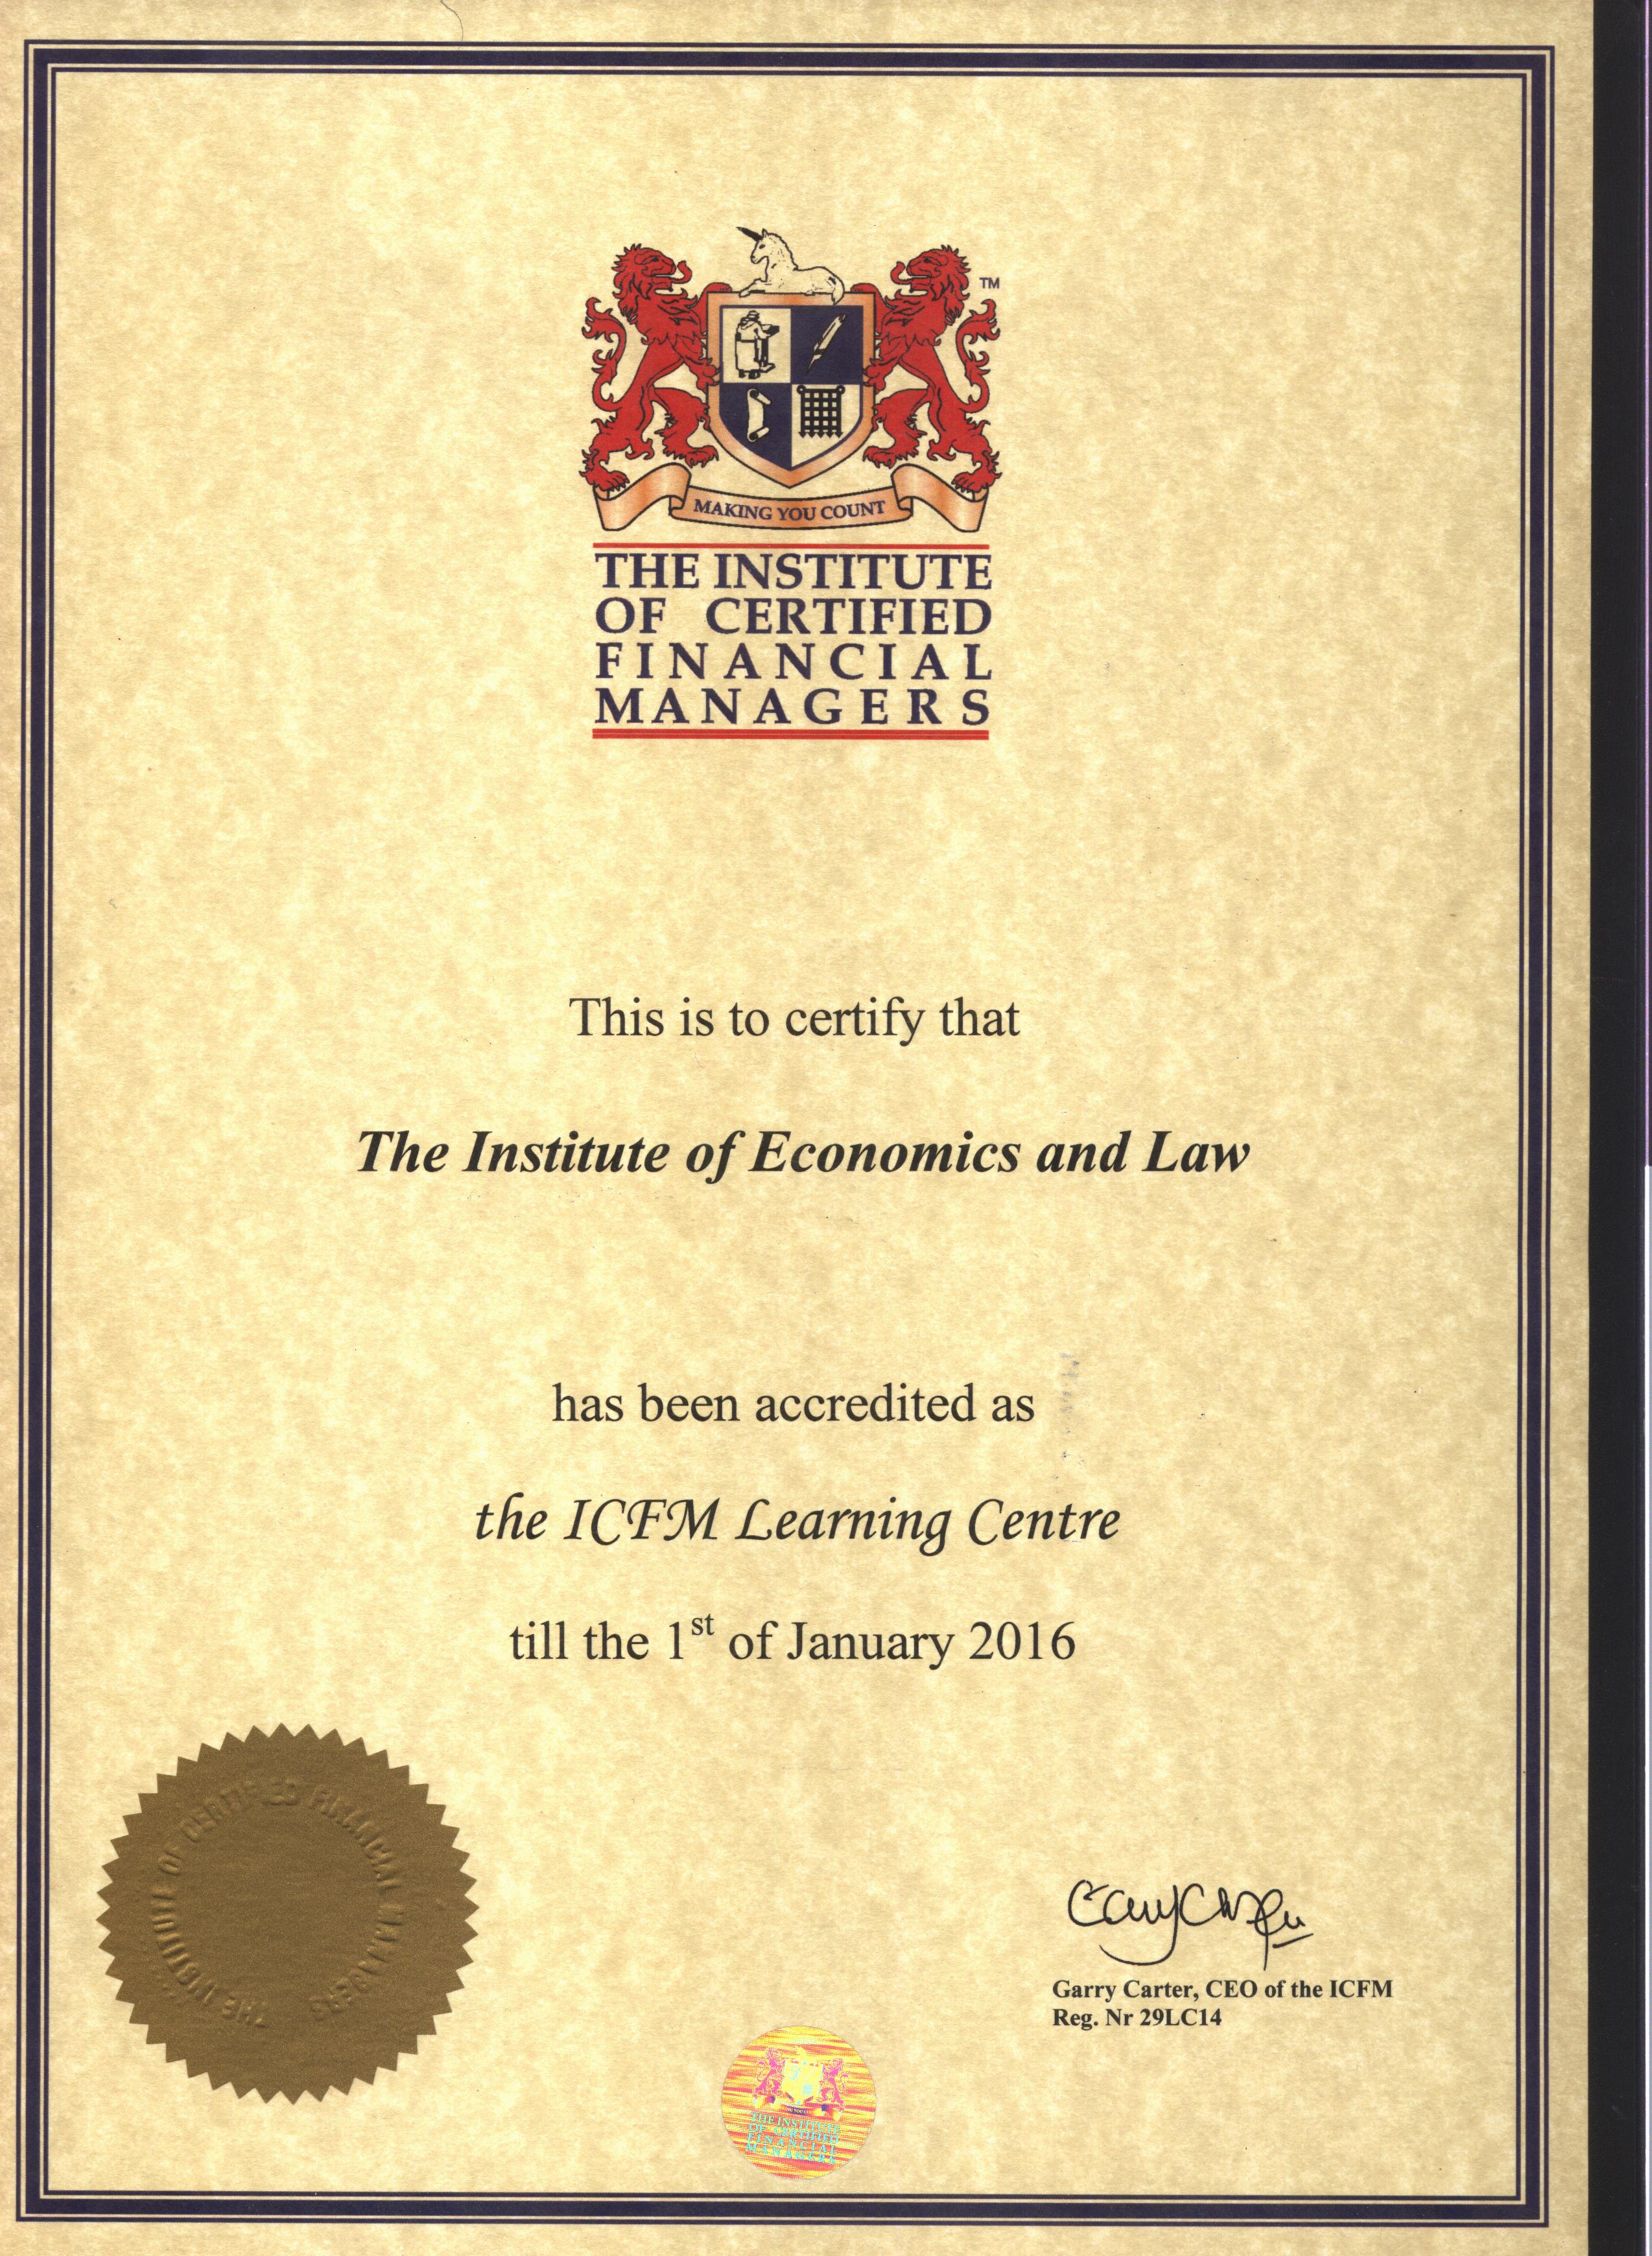 Сертификат об аккредитации НОУ Институт экономики и права в качестве учебного центра по программам обучения на диплом ИСФМ